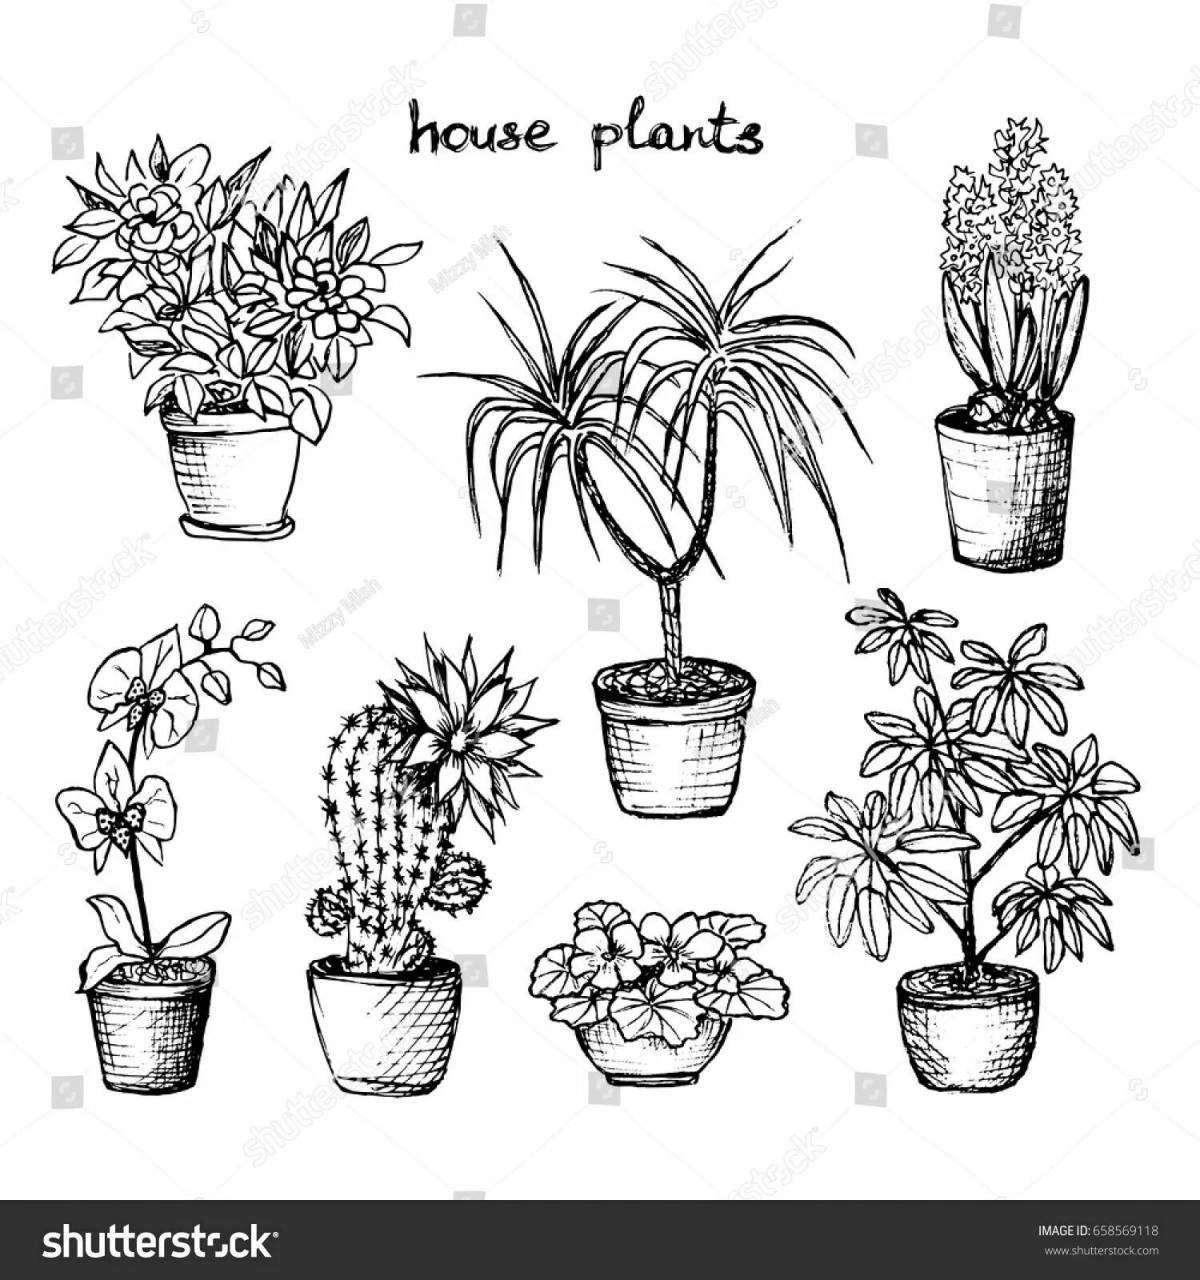 Раскраска с яркими комнатными растениями для дошкольников